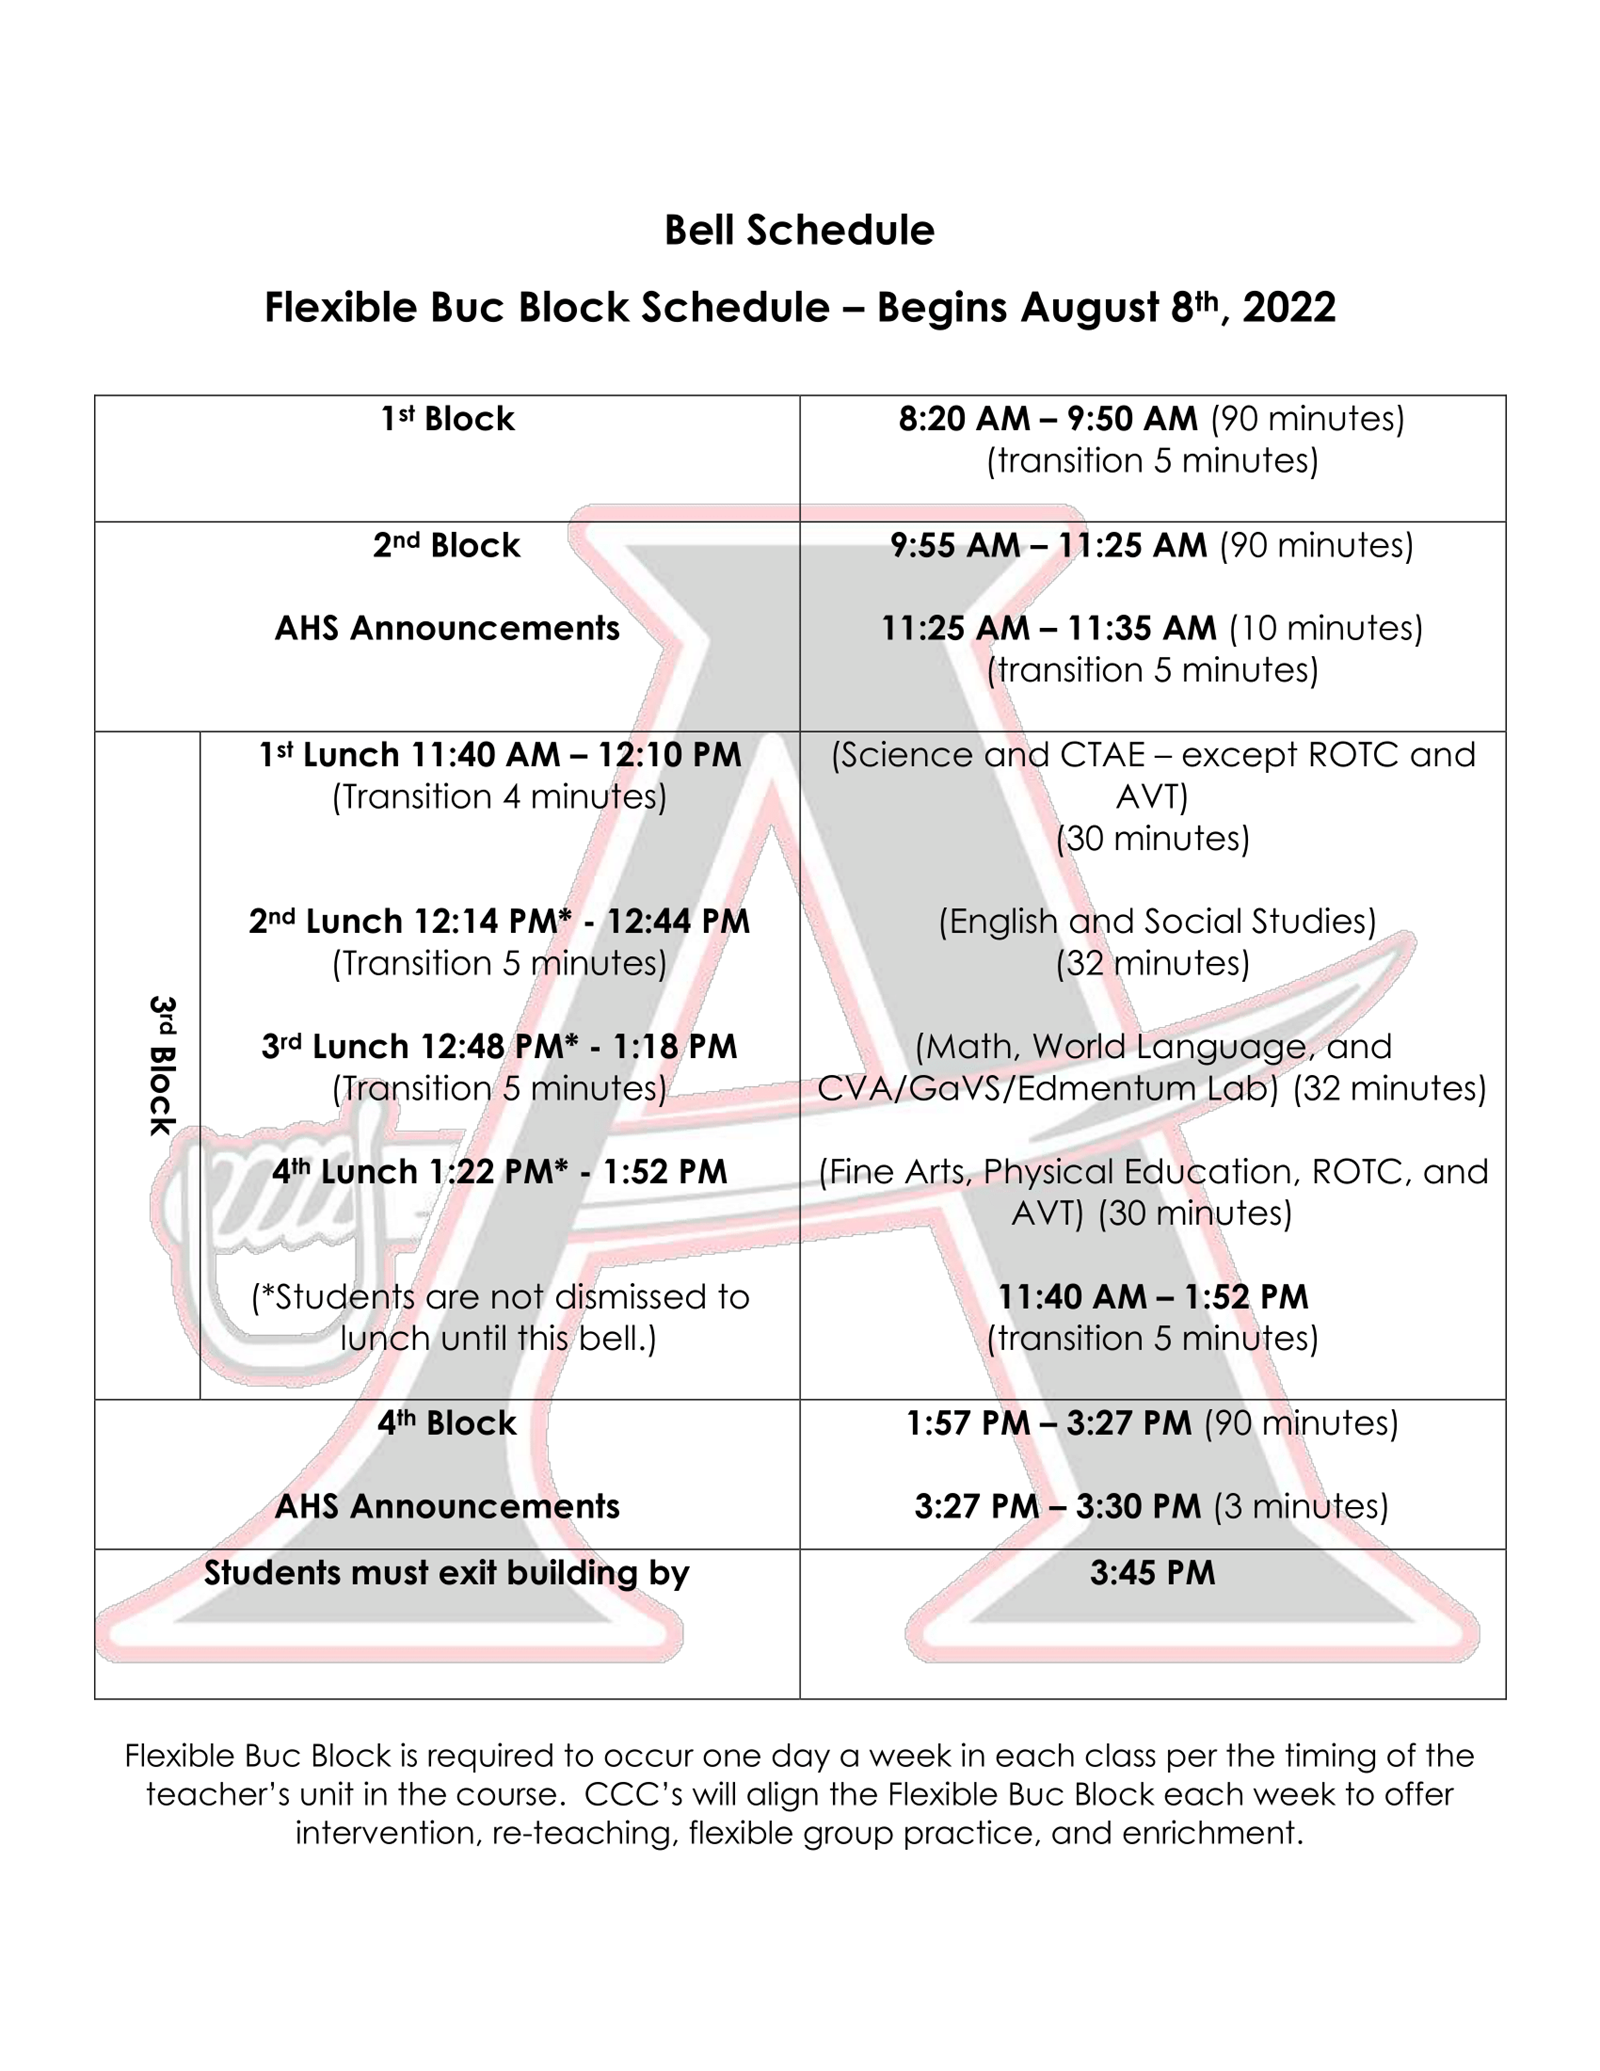 Bell Schedule - Flexible Buc Block Schedule - Begins 8/8/2022